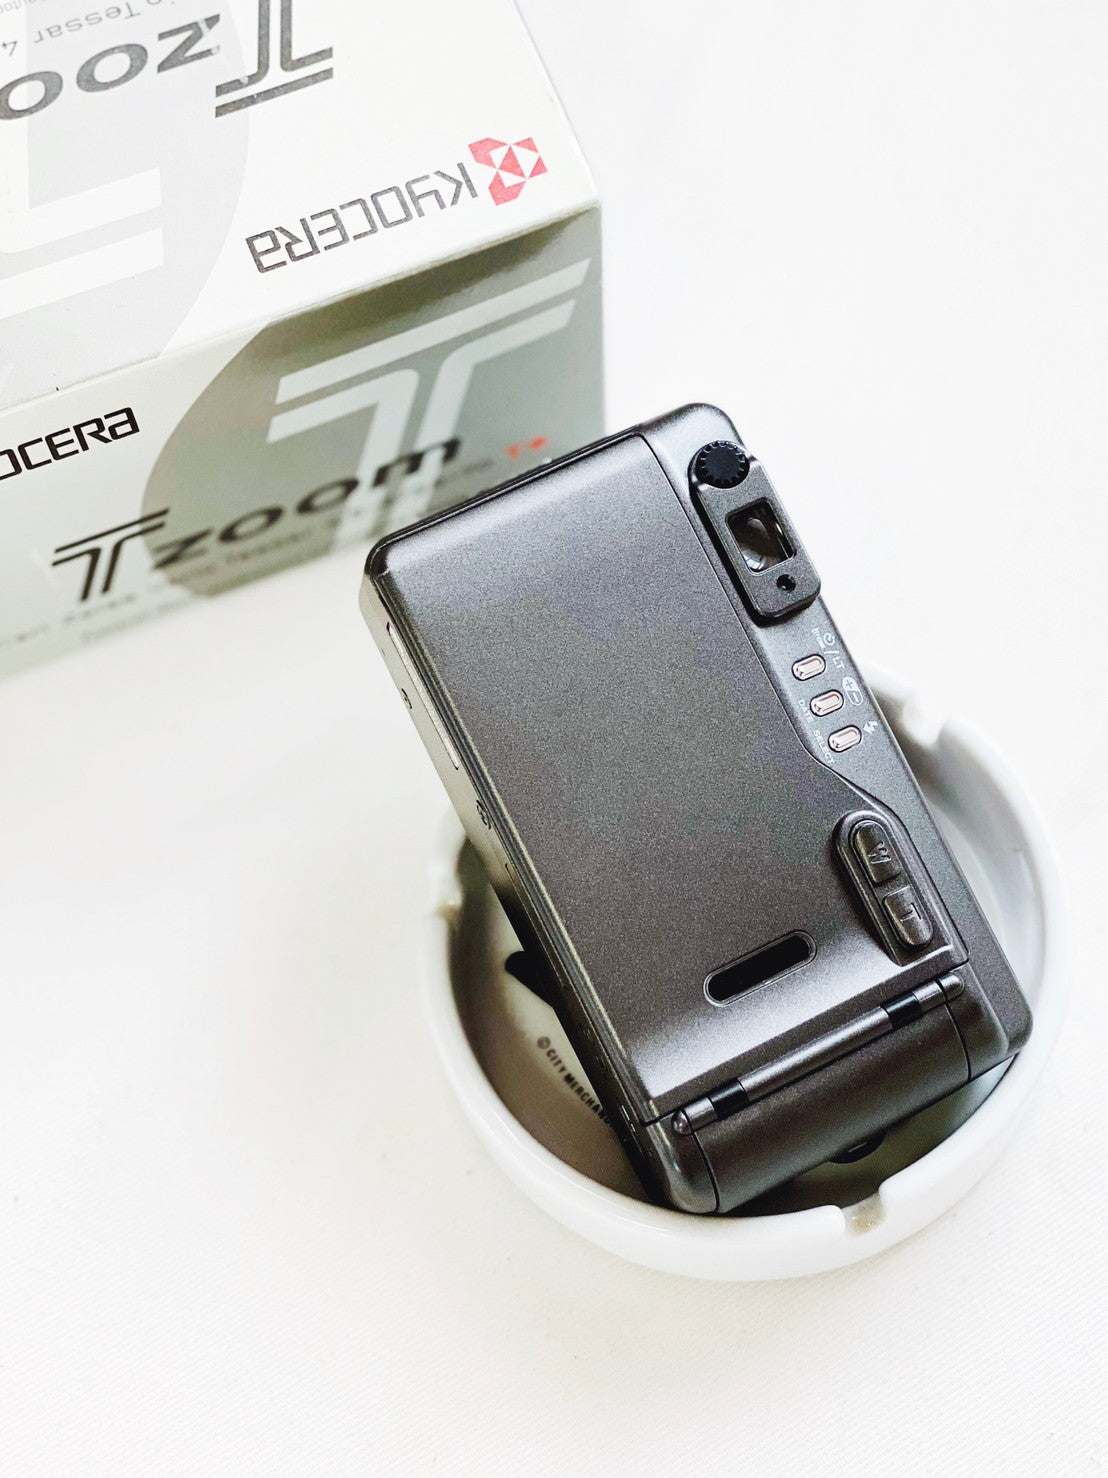 Kyocera T-Zoom with Box – kit_camera